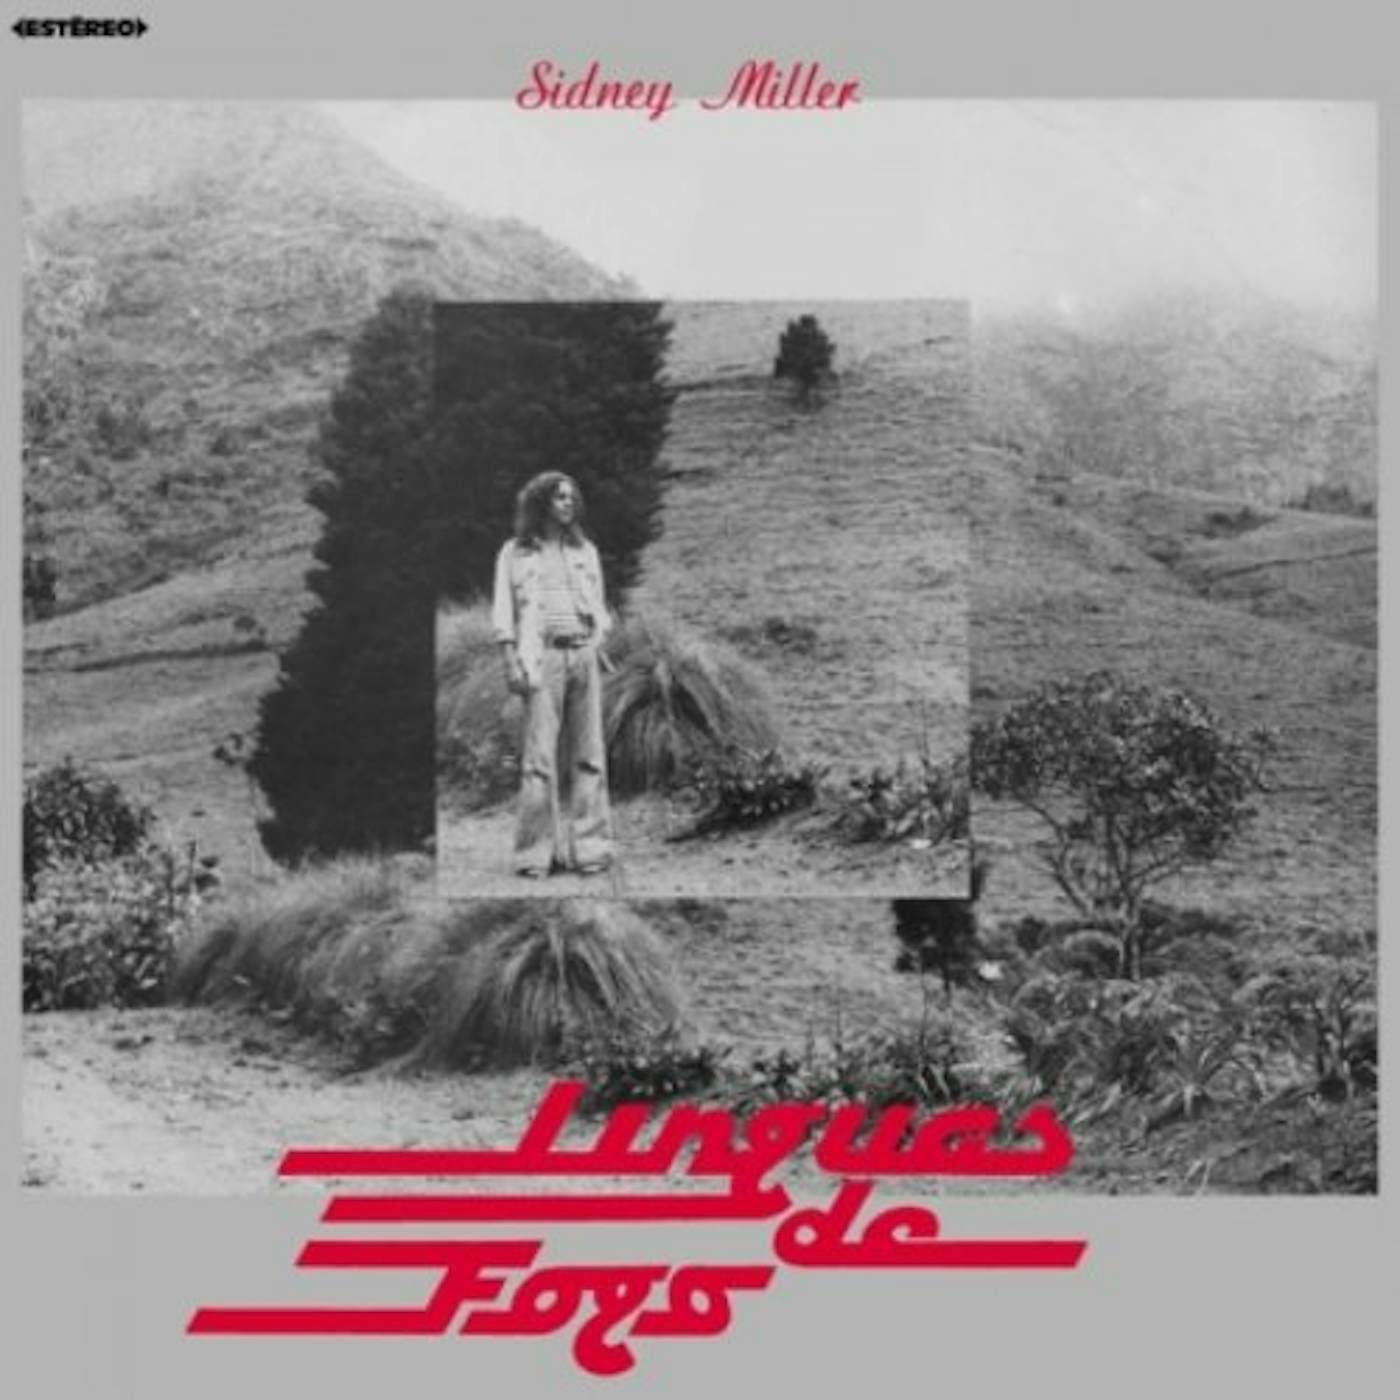 Sidney Miller LINGUAS DE FOGO Vinyl Record